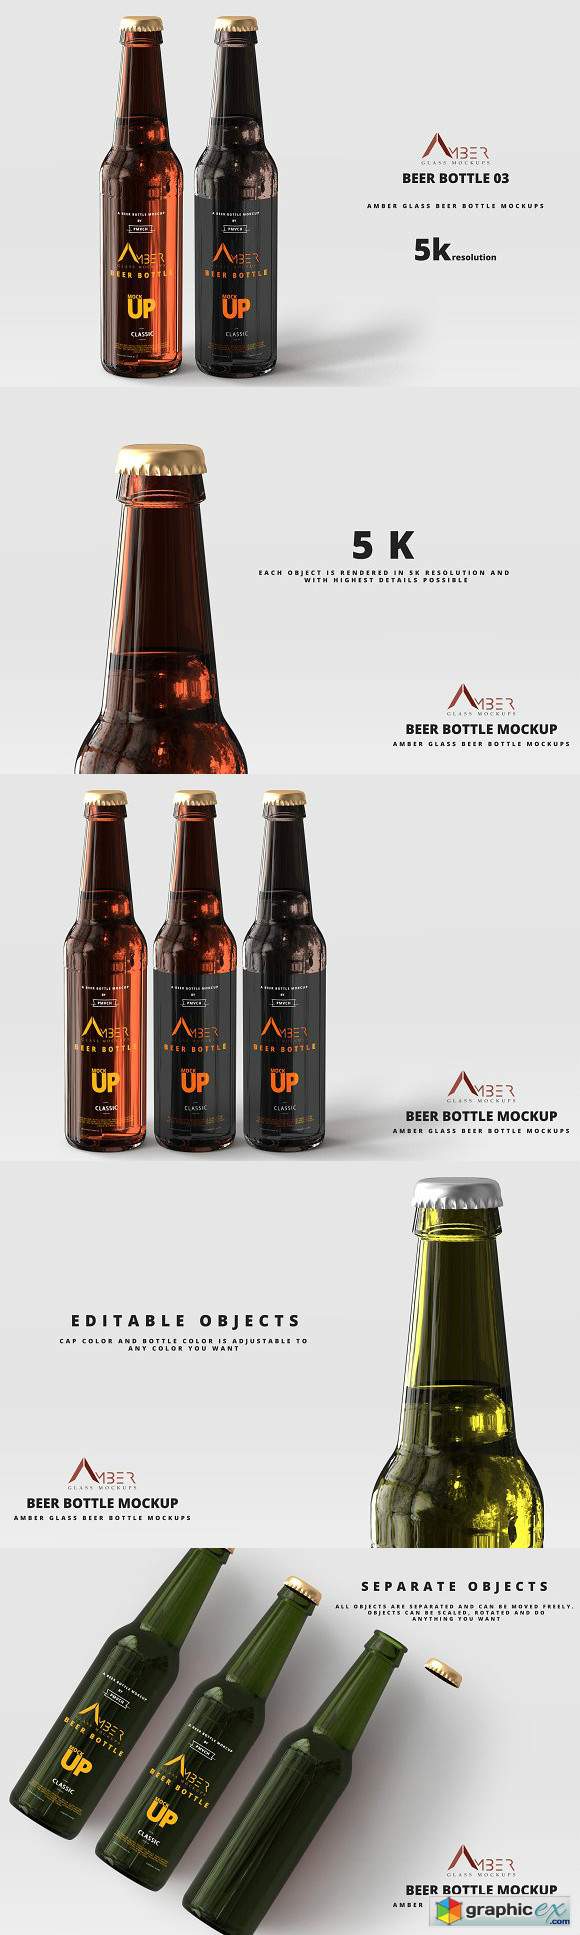 Amber Glass Beer Bottle Mockup 03